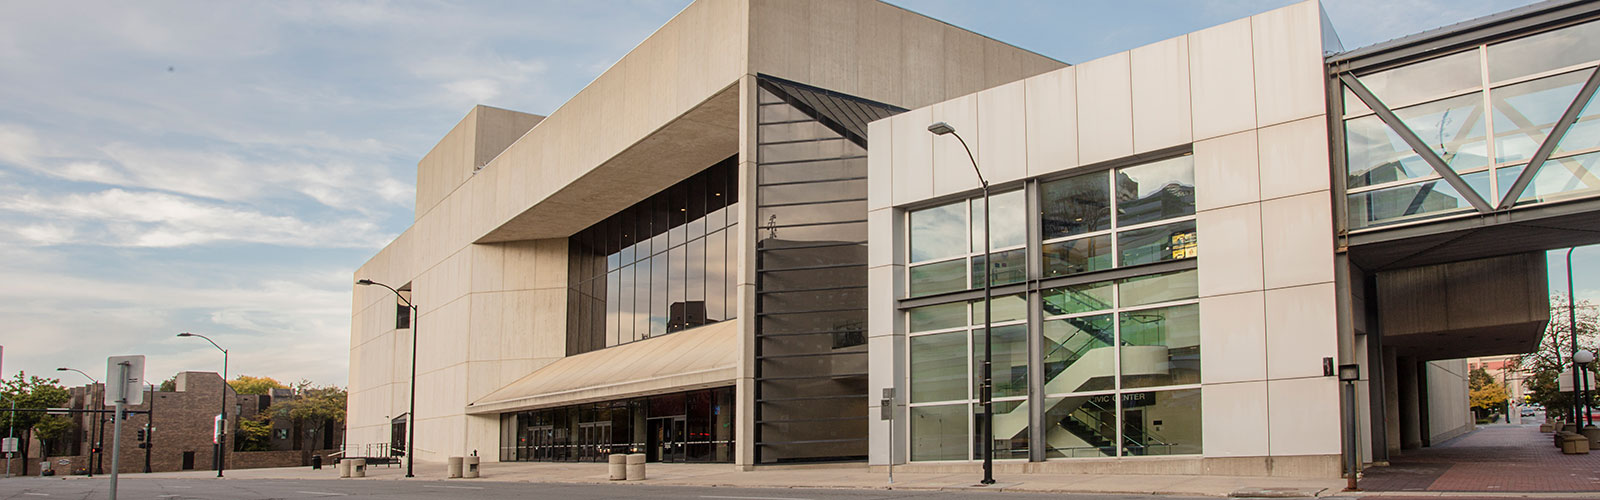 Des Moines Civic Center - Des Moines Performing Arts